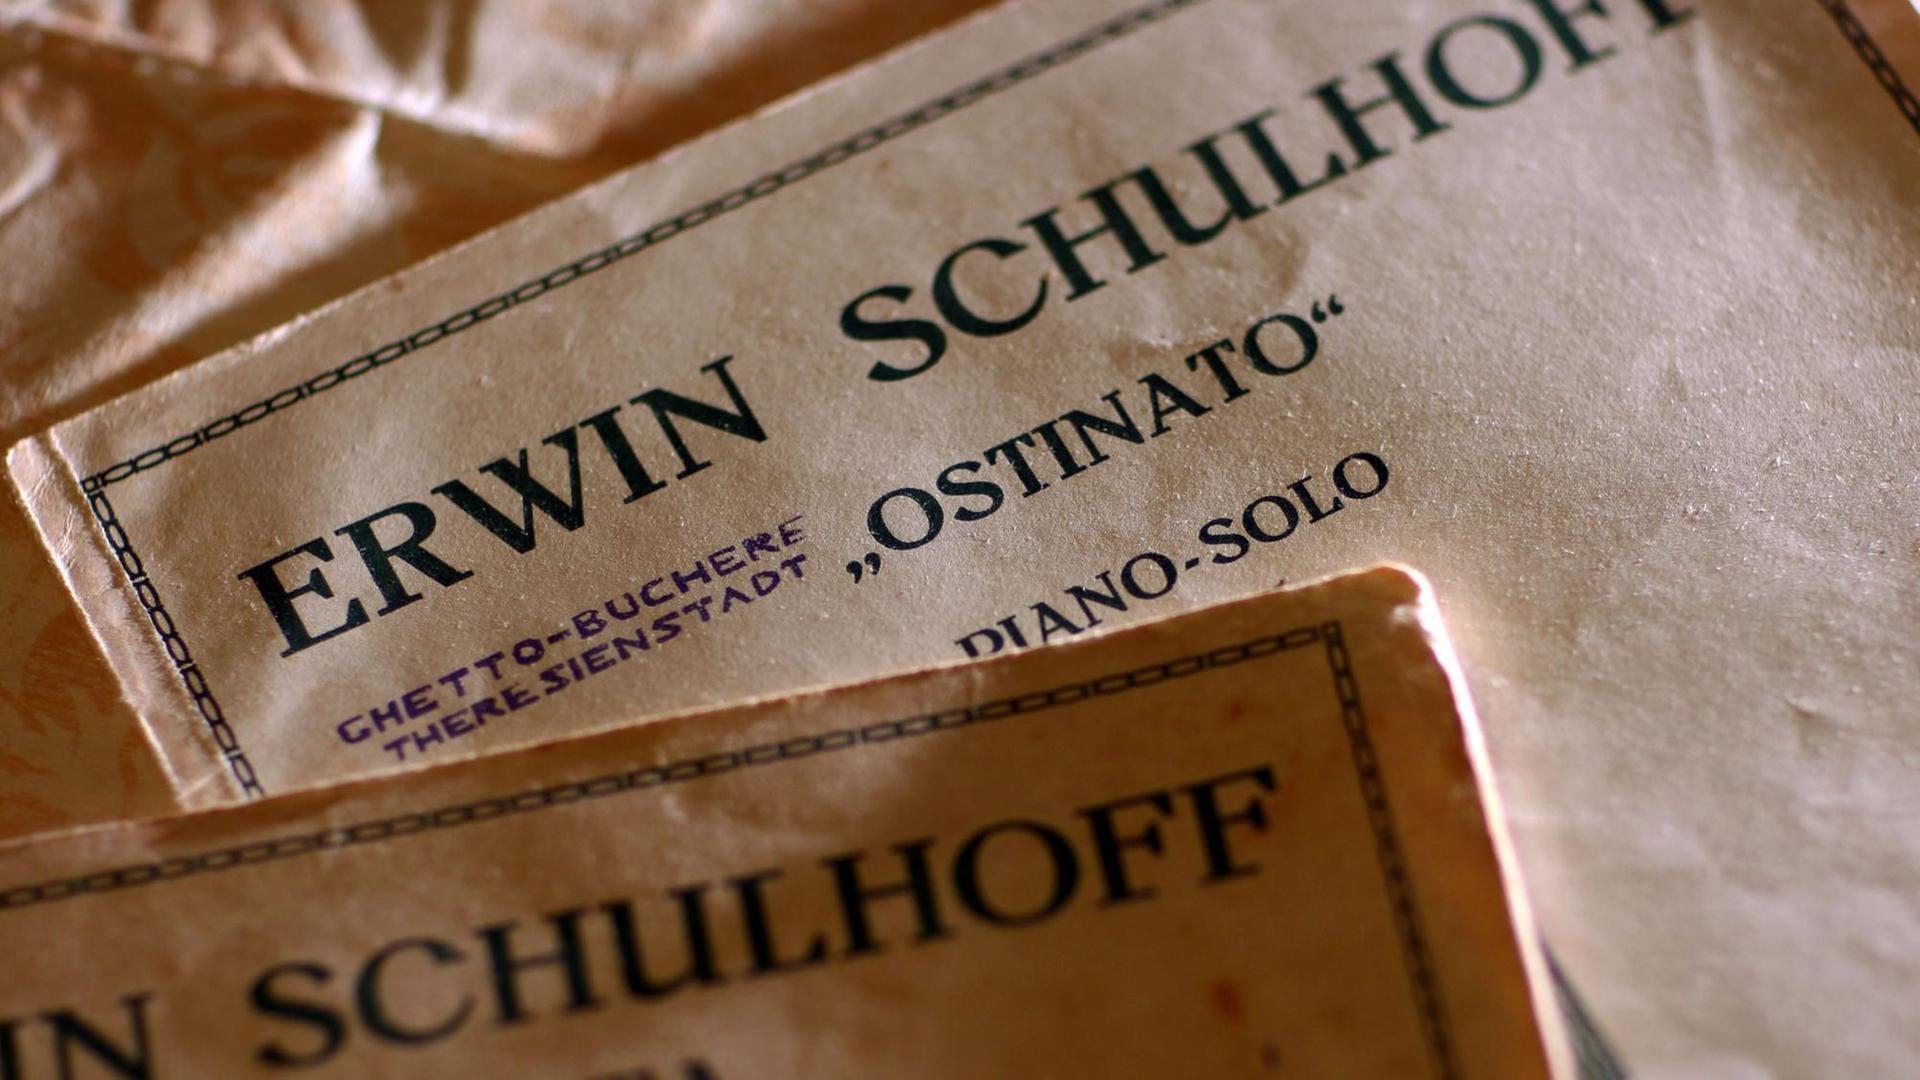 Auf dem Bild sind Noten zu sehen mit dem Titel "Erwin Schulhoff: Ostinato".